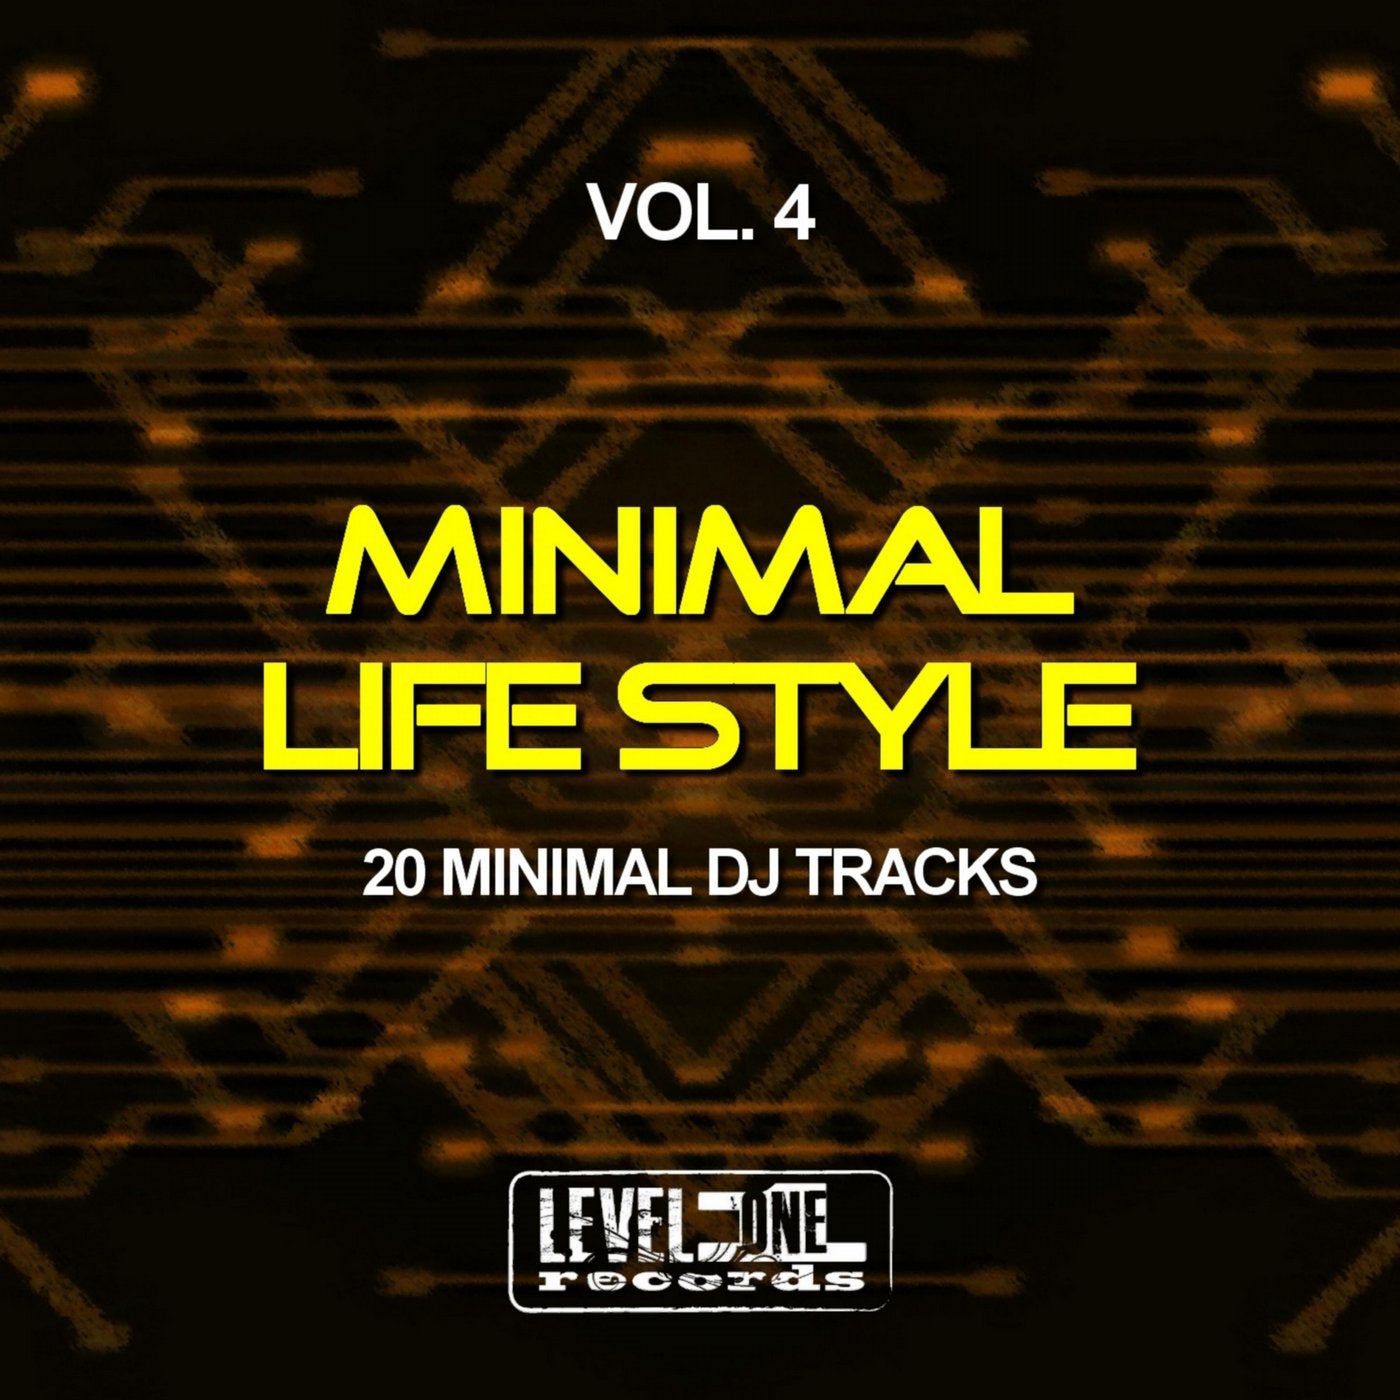 Minimal Life Style, Vol. 4 (20 Minimal DJ Tracks)